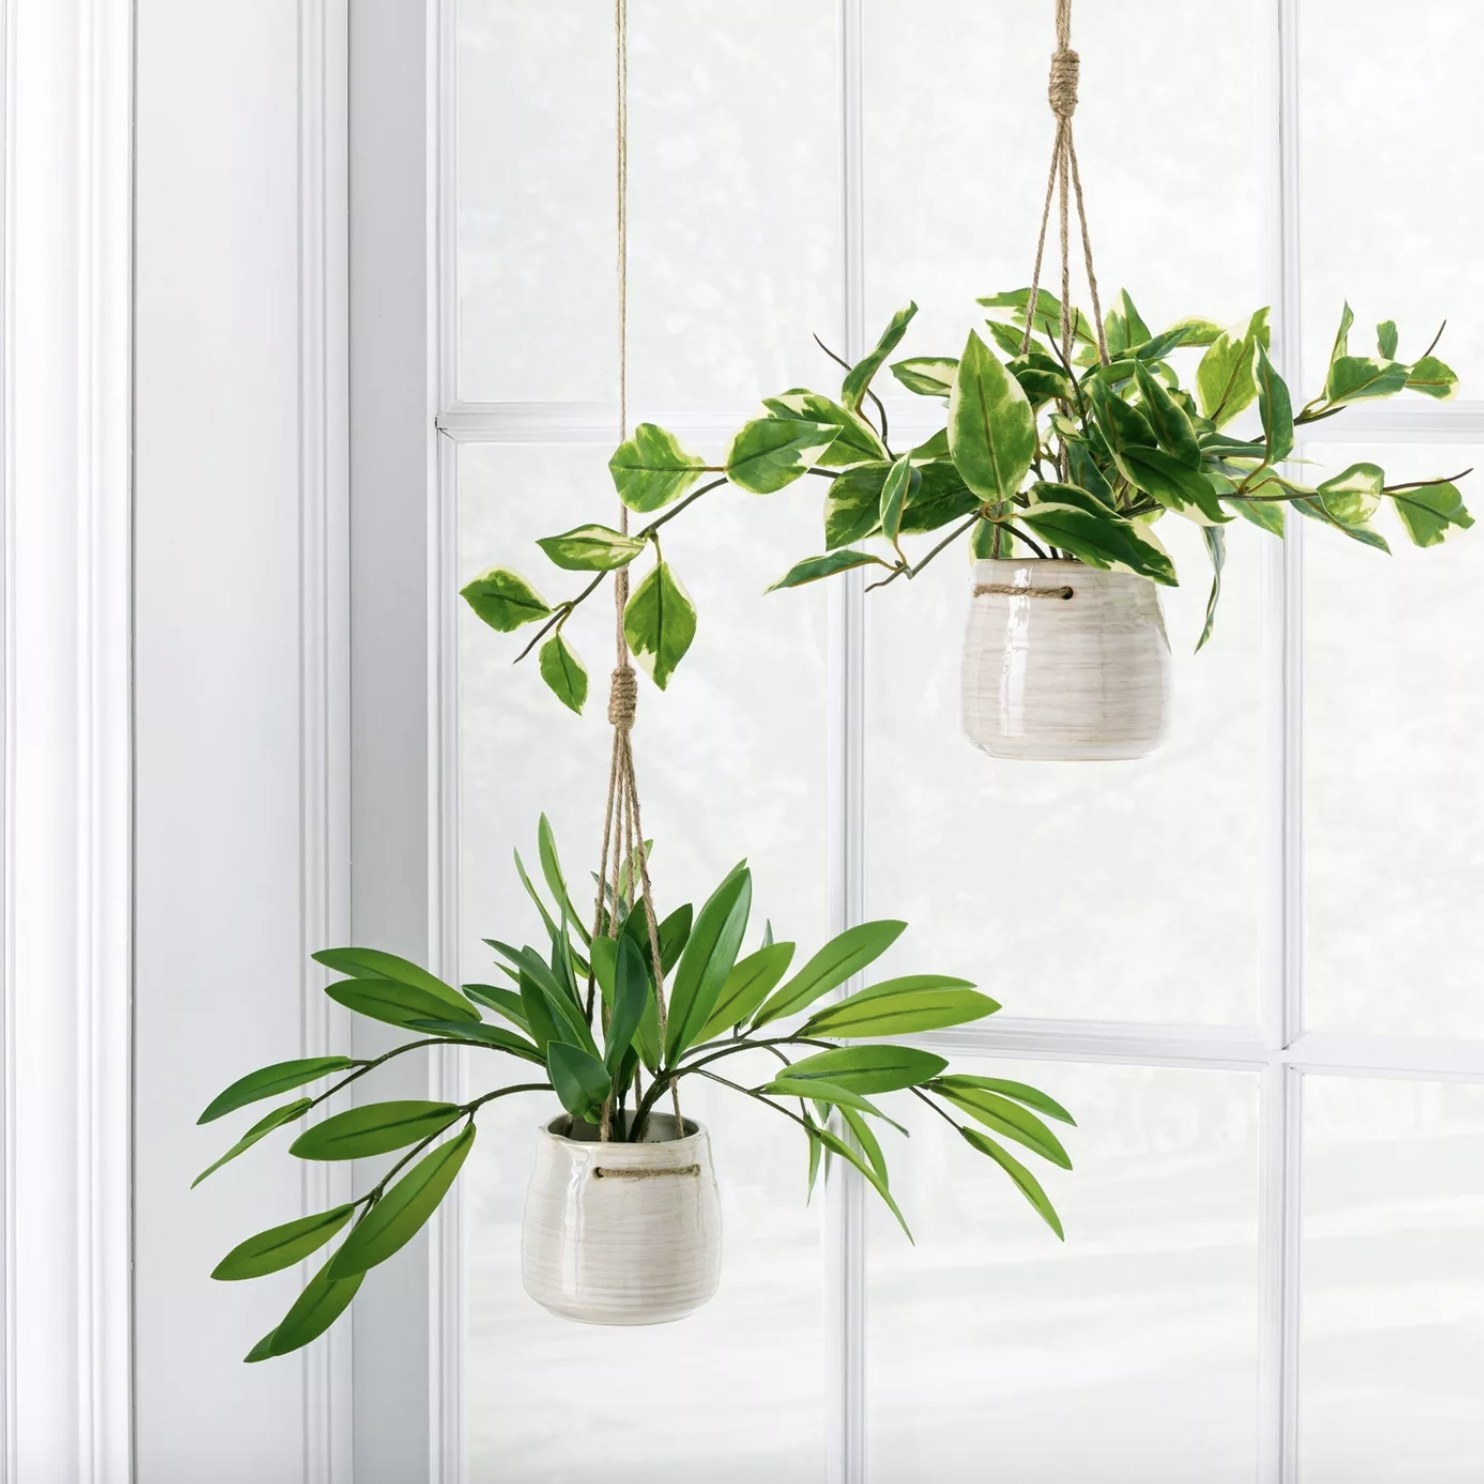 Fake hanging plants